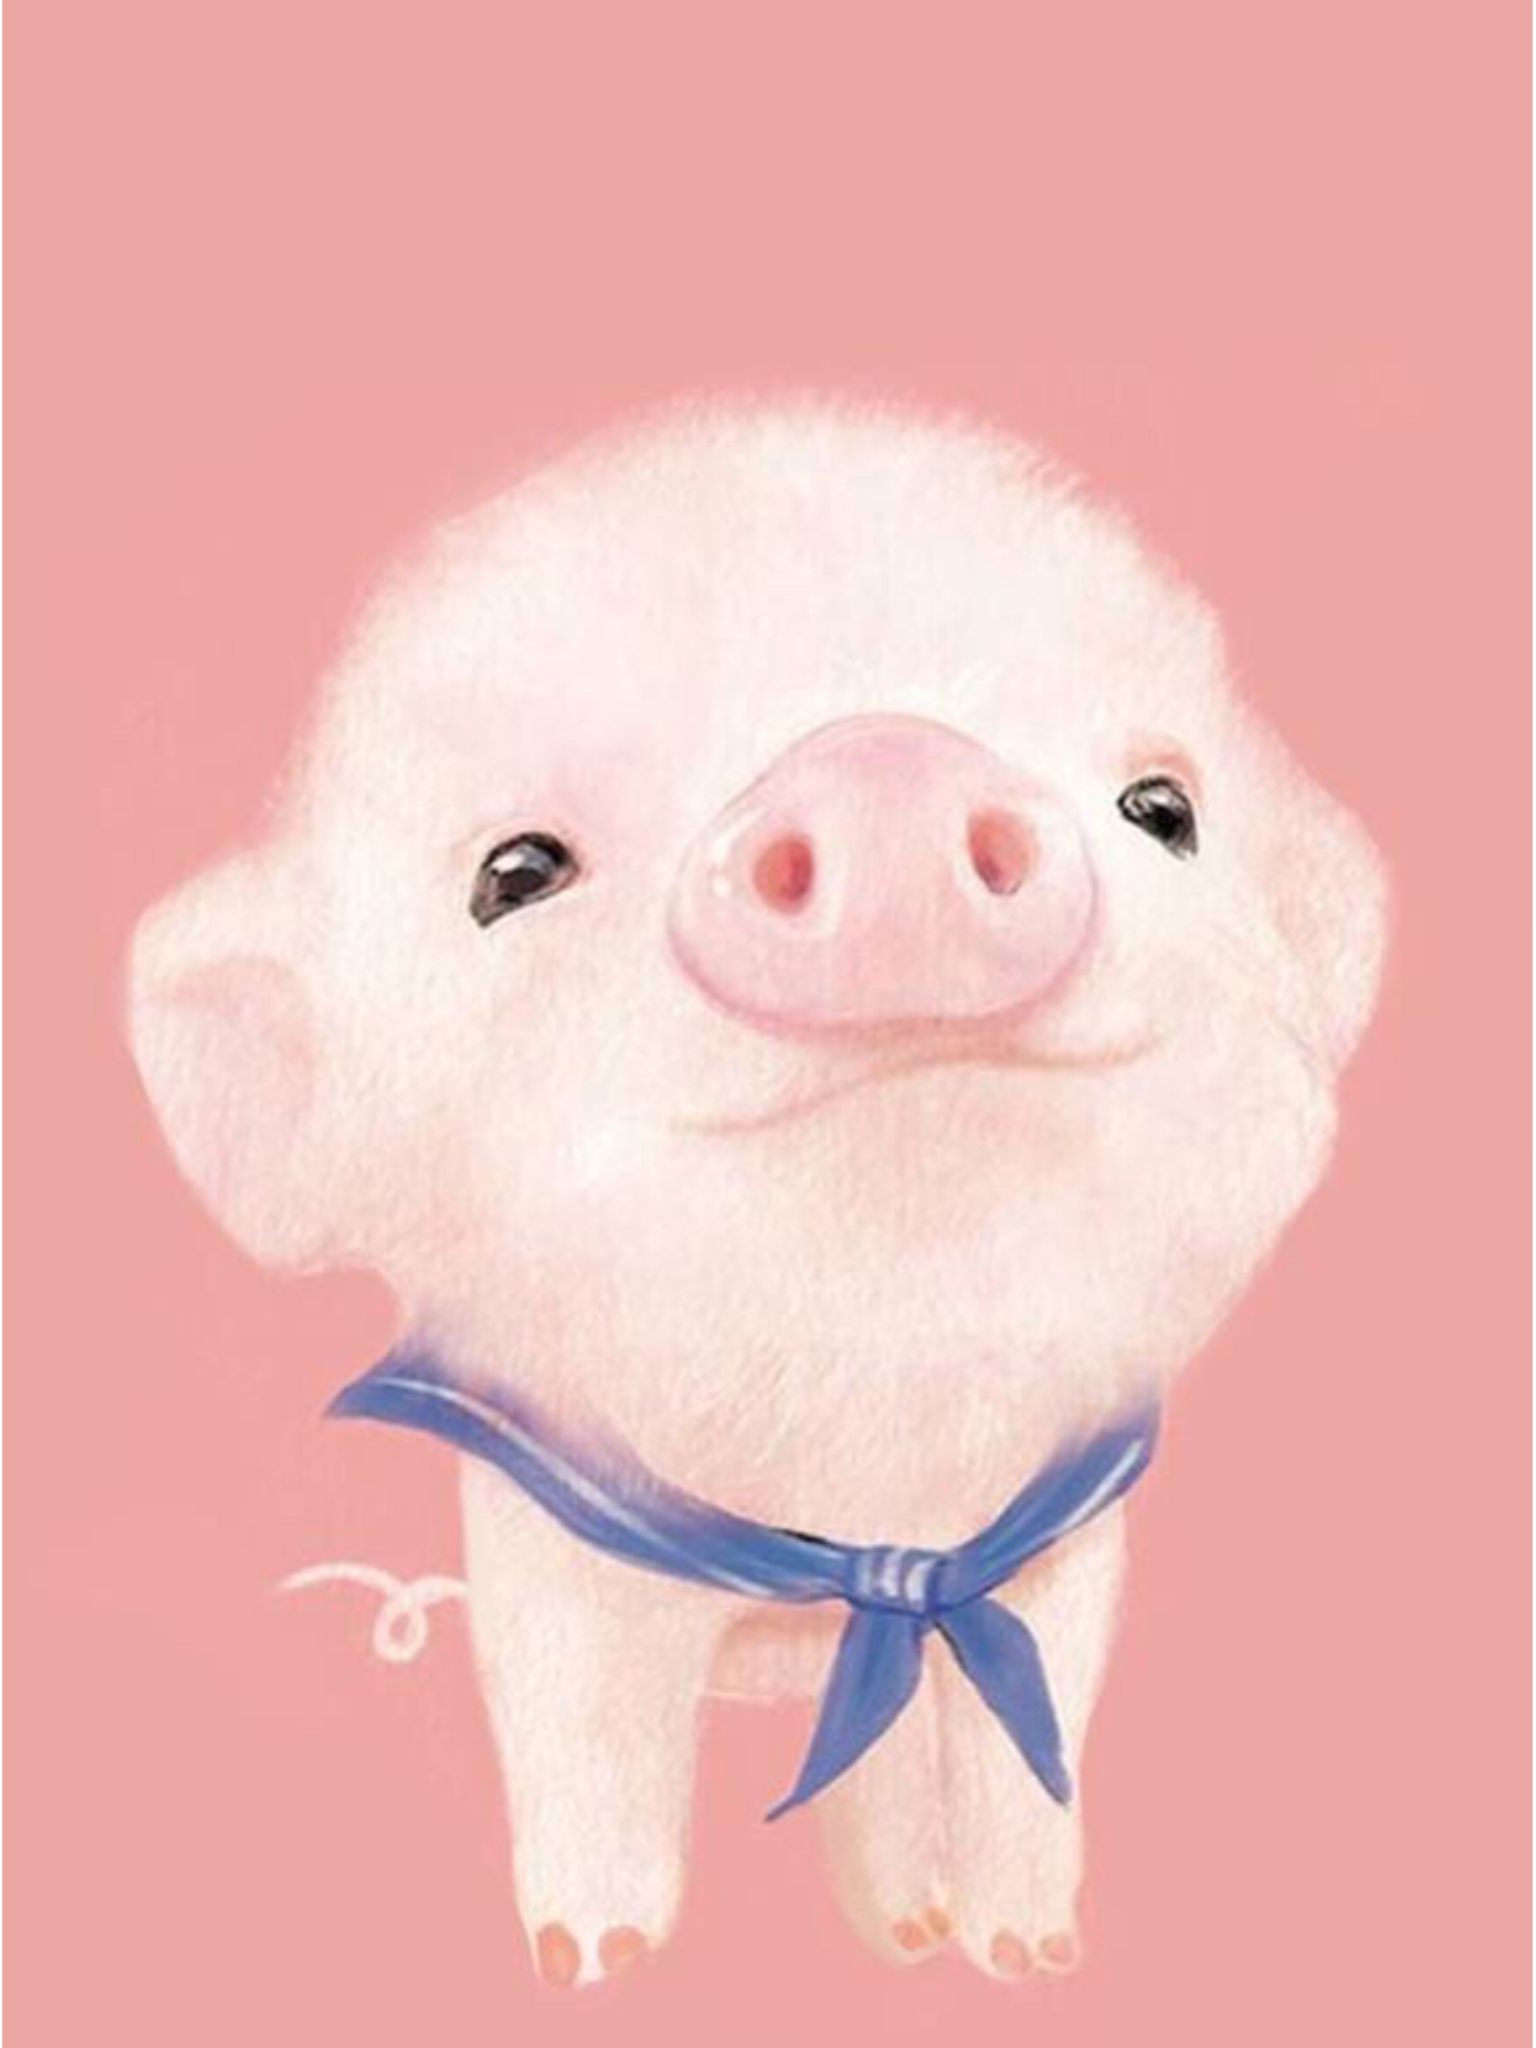 豚のiphoneの壁紙,飼い豚,スイダ,ピンク,鼻,漫画